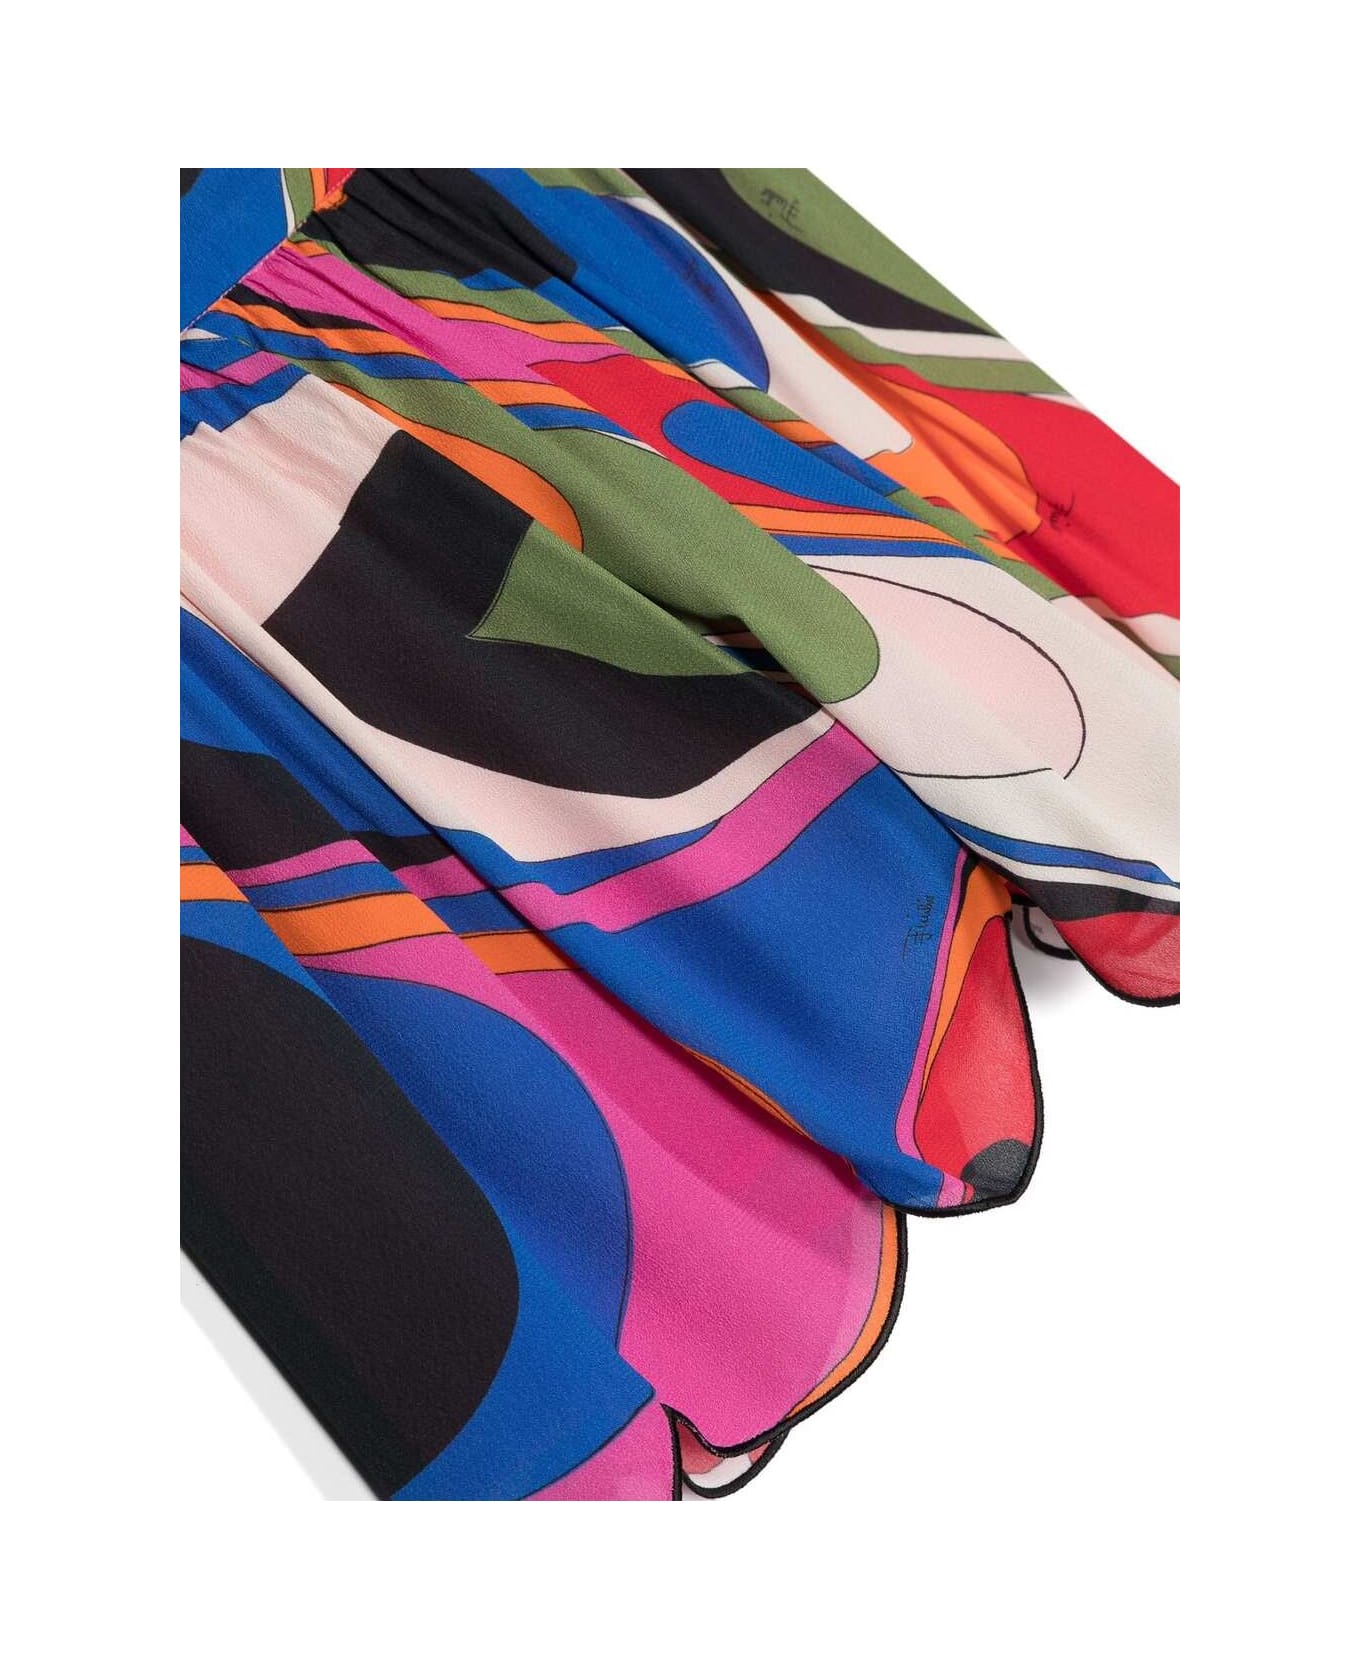 Pucci Multicoloured Wave Print Shorts - Multicolour